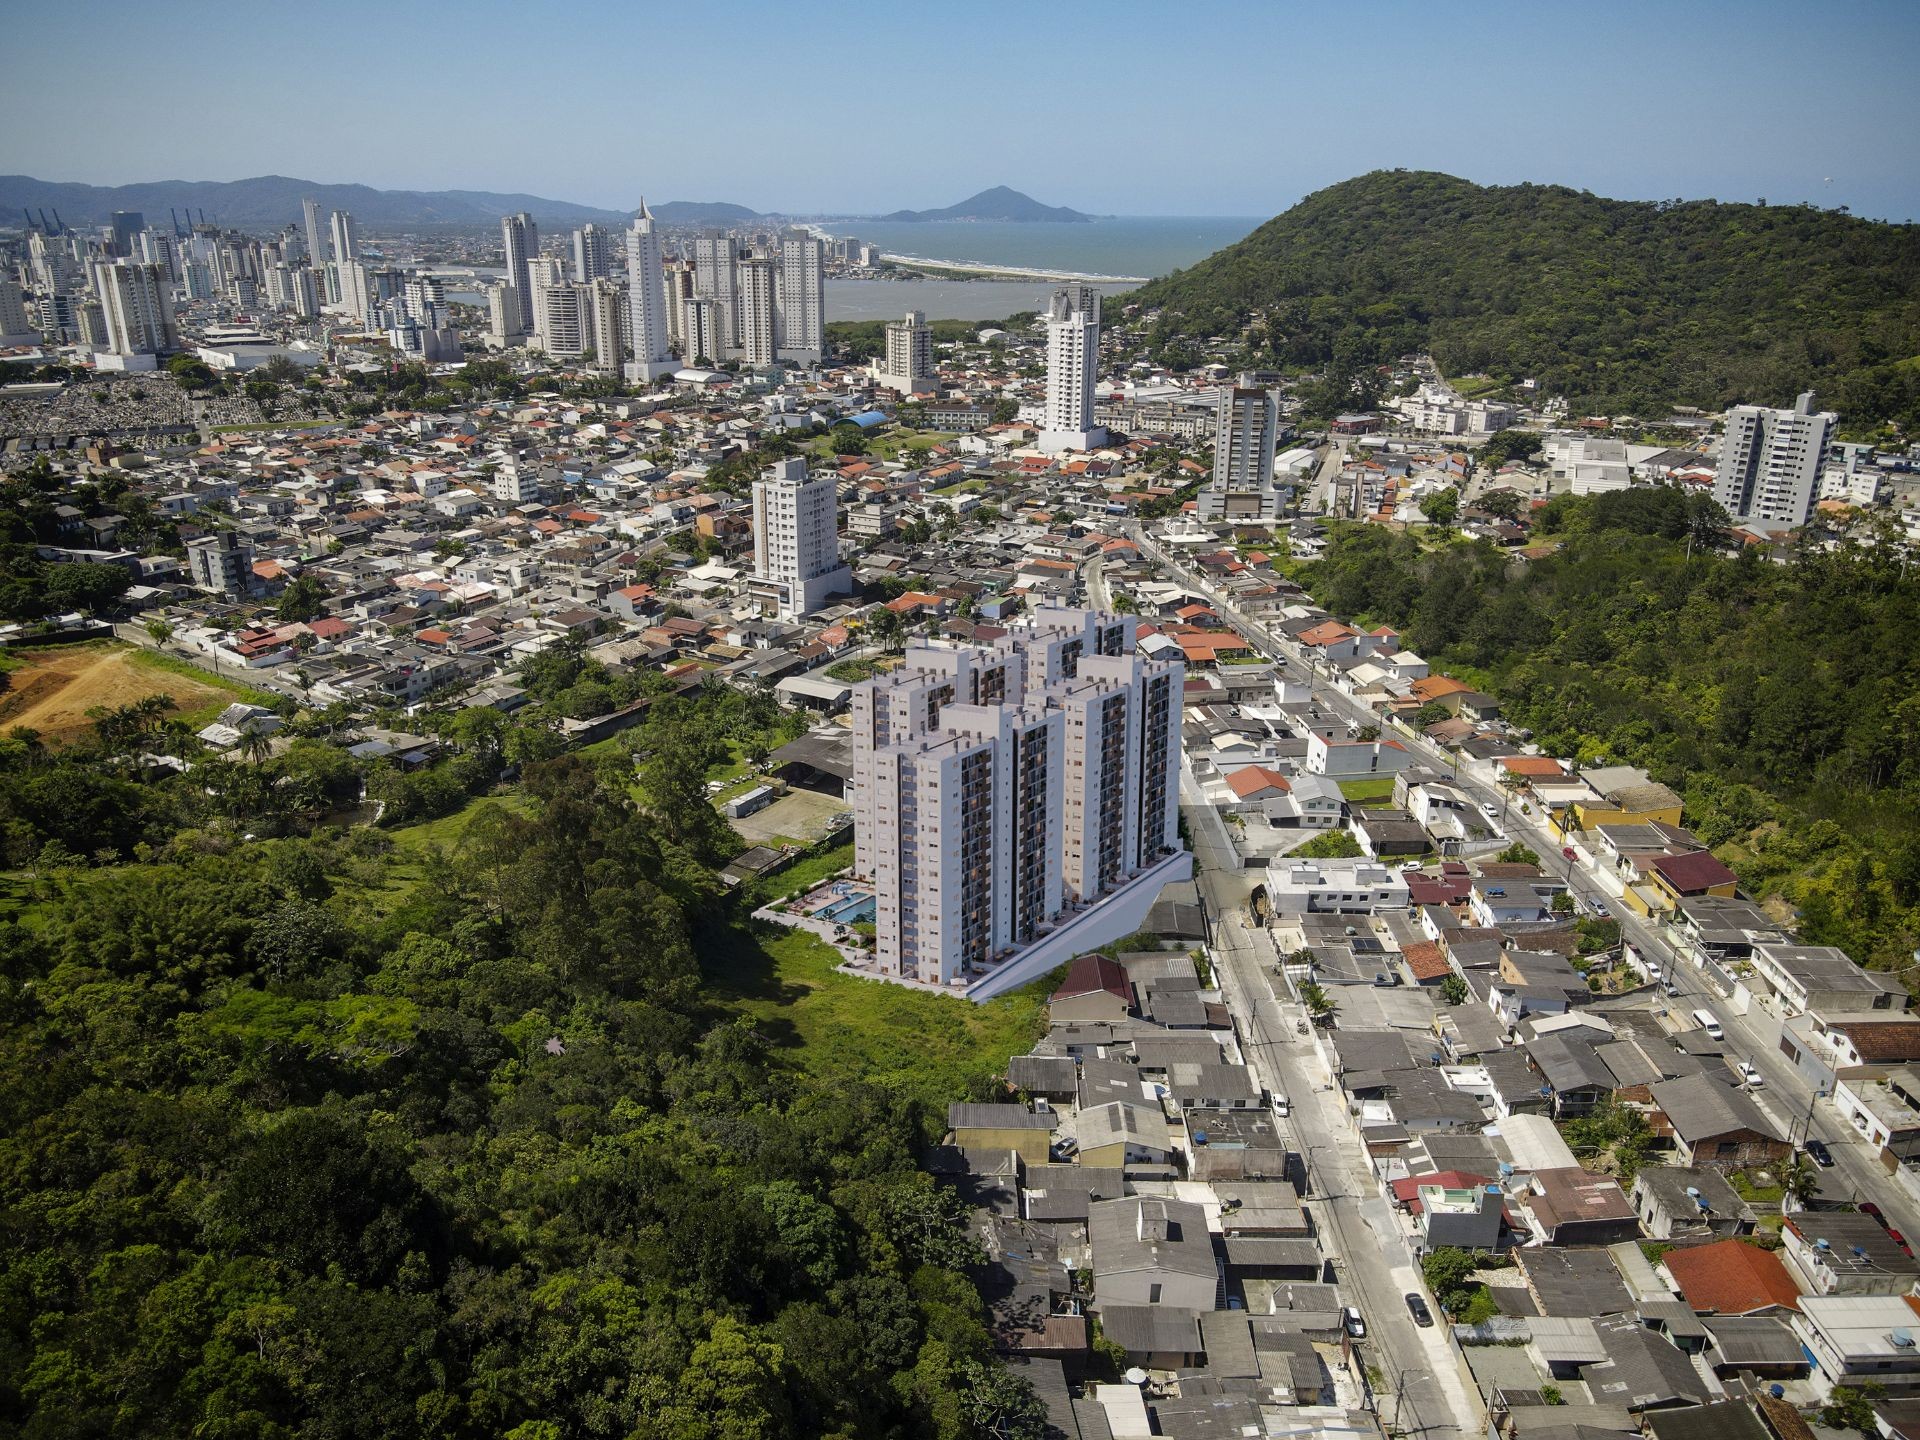 LANÇAMENTO! Apartamento 3 dormitórios, sendo 1 Suíte e Churrasqueira a carvão Em Home Resort Localizado em Itajaí - SC